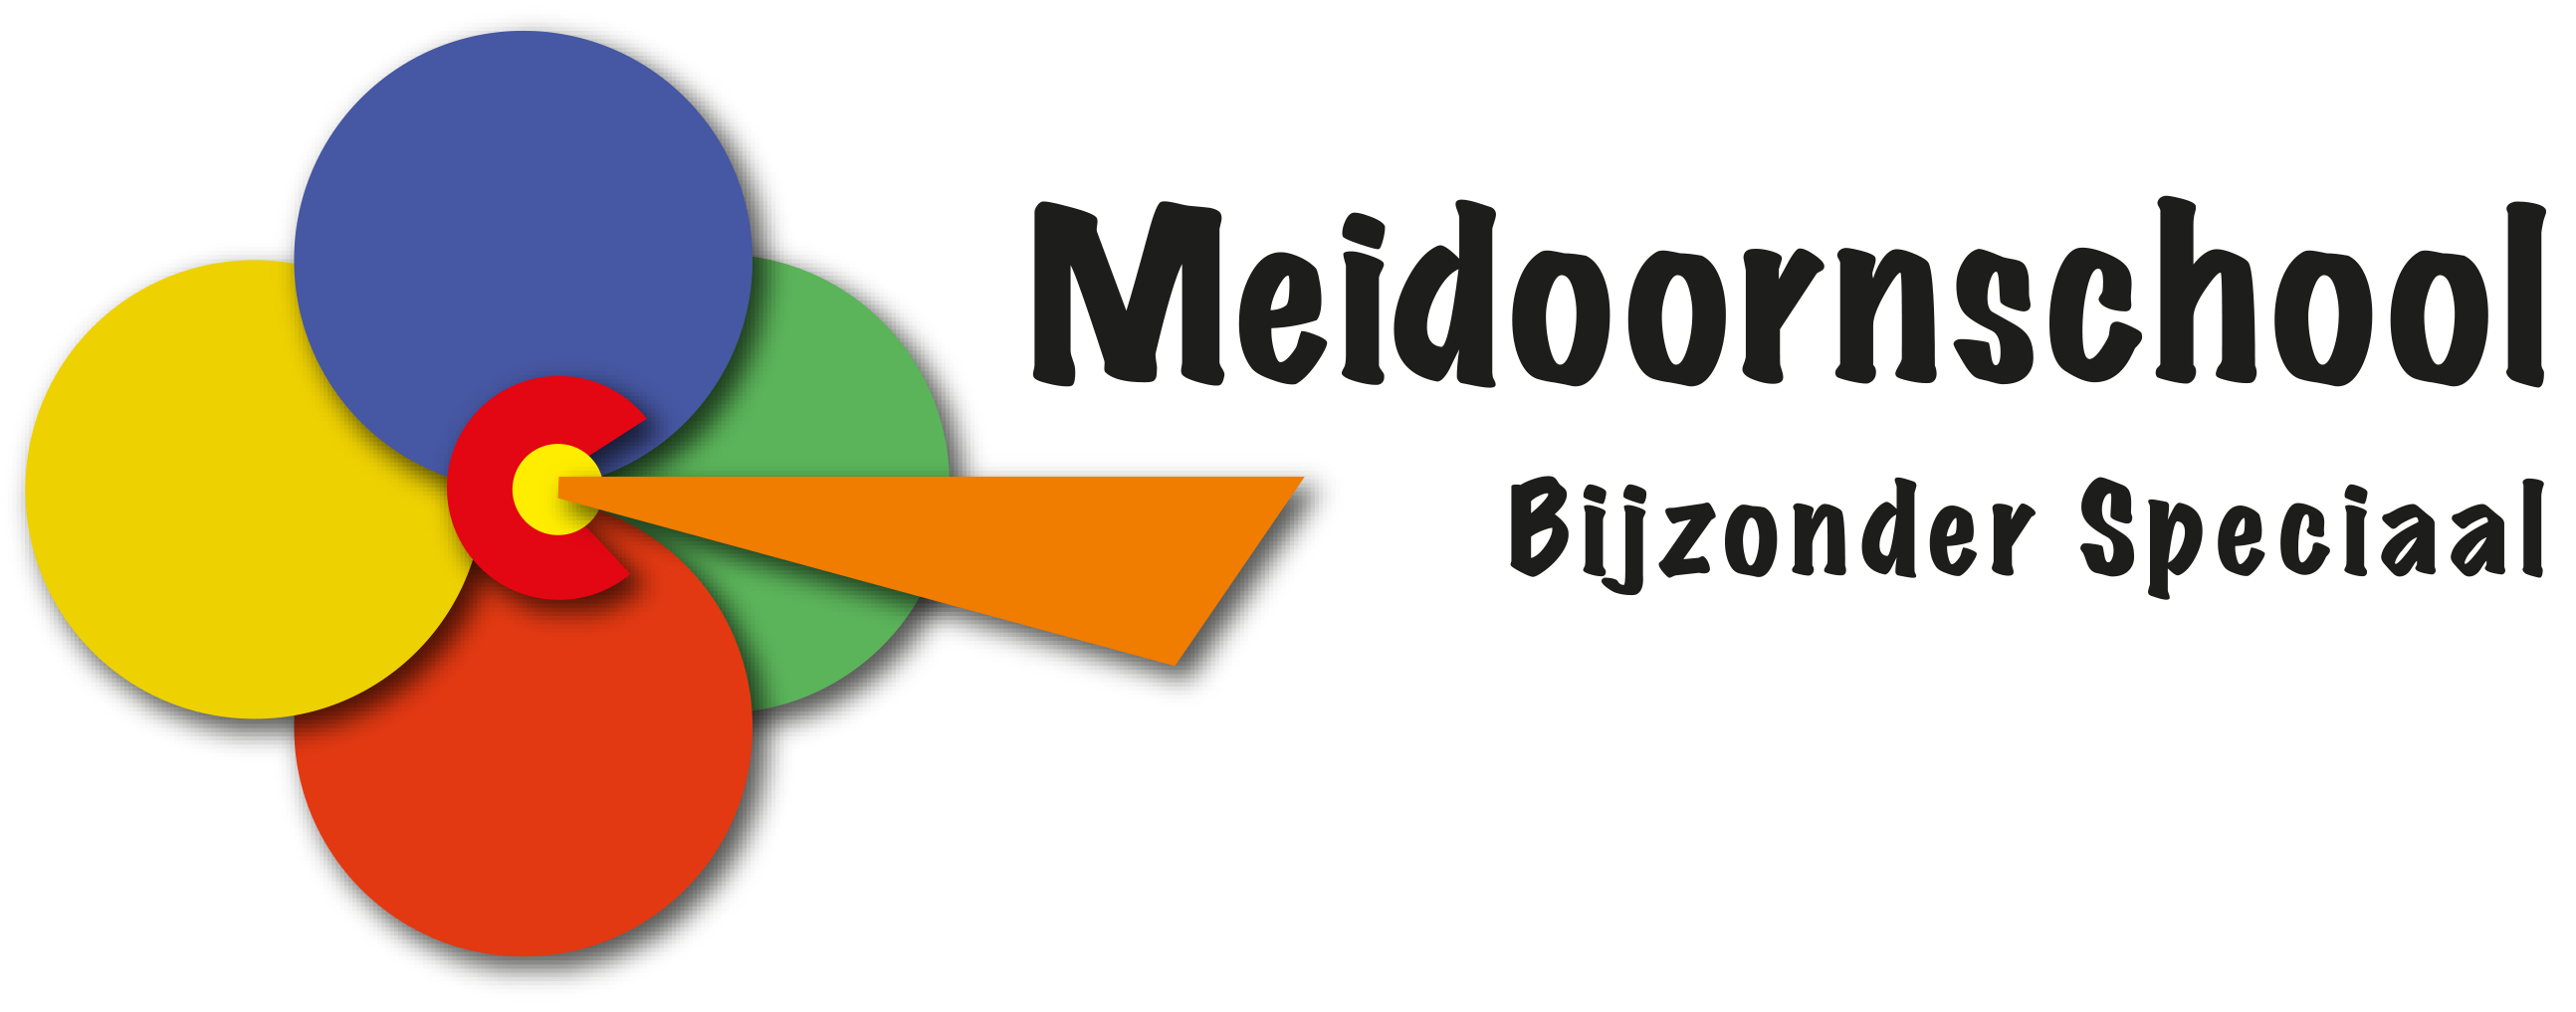 Meidoorschool logo